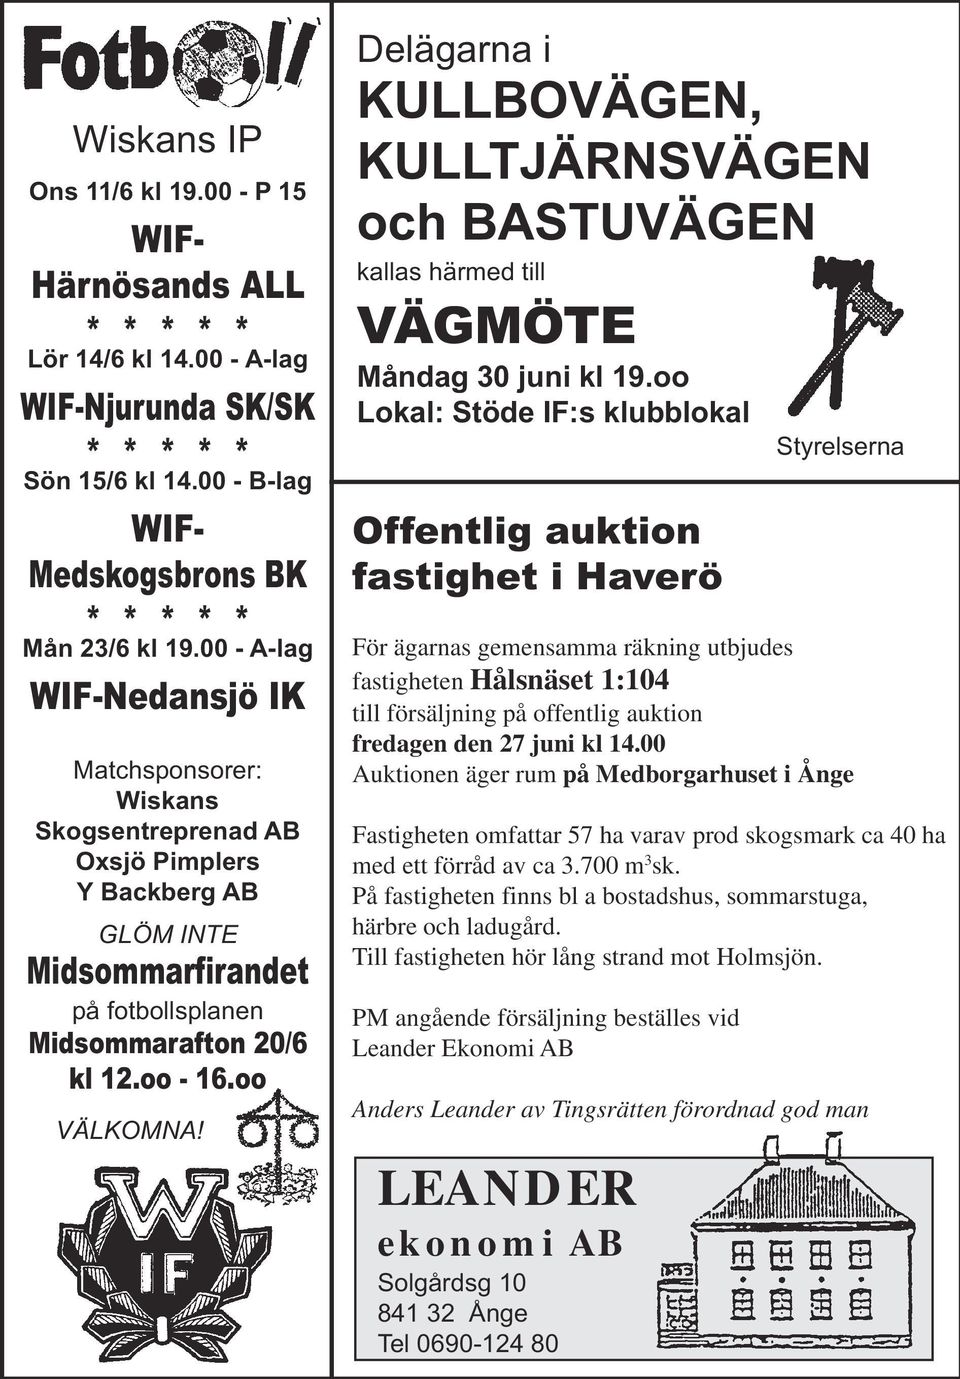 Delägarna i KULLBOVÄGEN, KULLTJÄRNSVÄGEN och BASTUVÄGEN kallas härmed till VÄGMÖTE Måndag 30 juni kl 19.